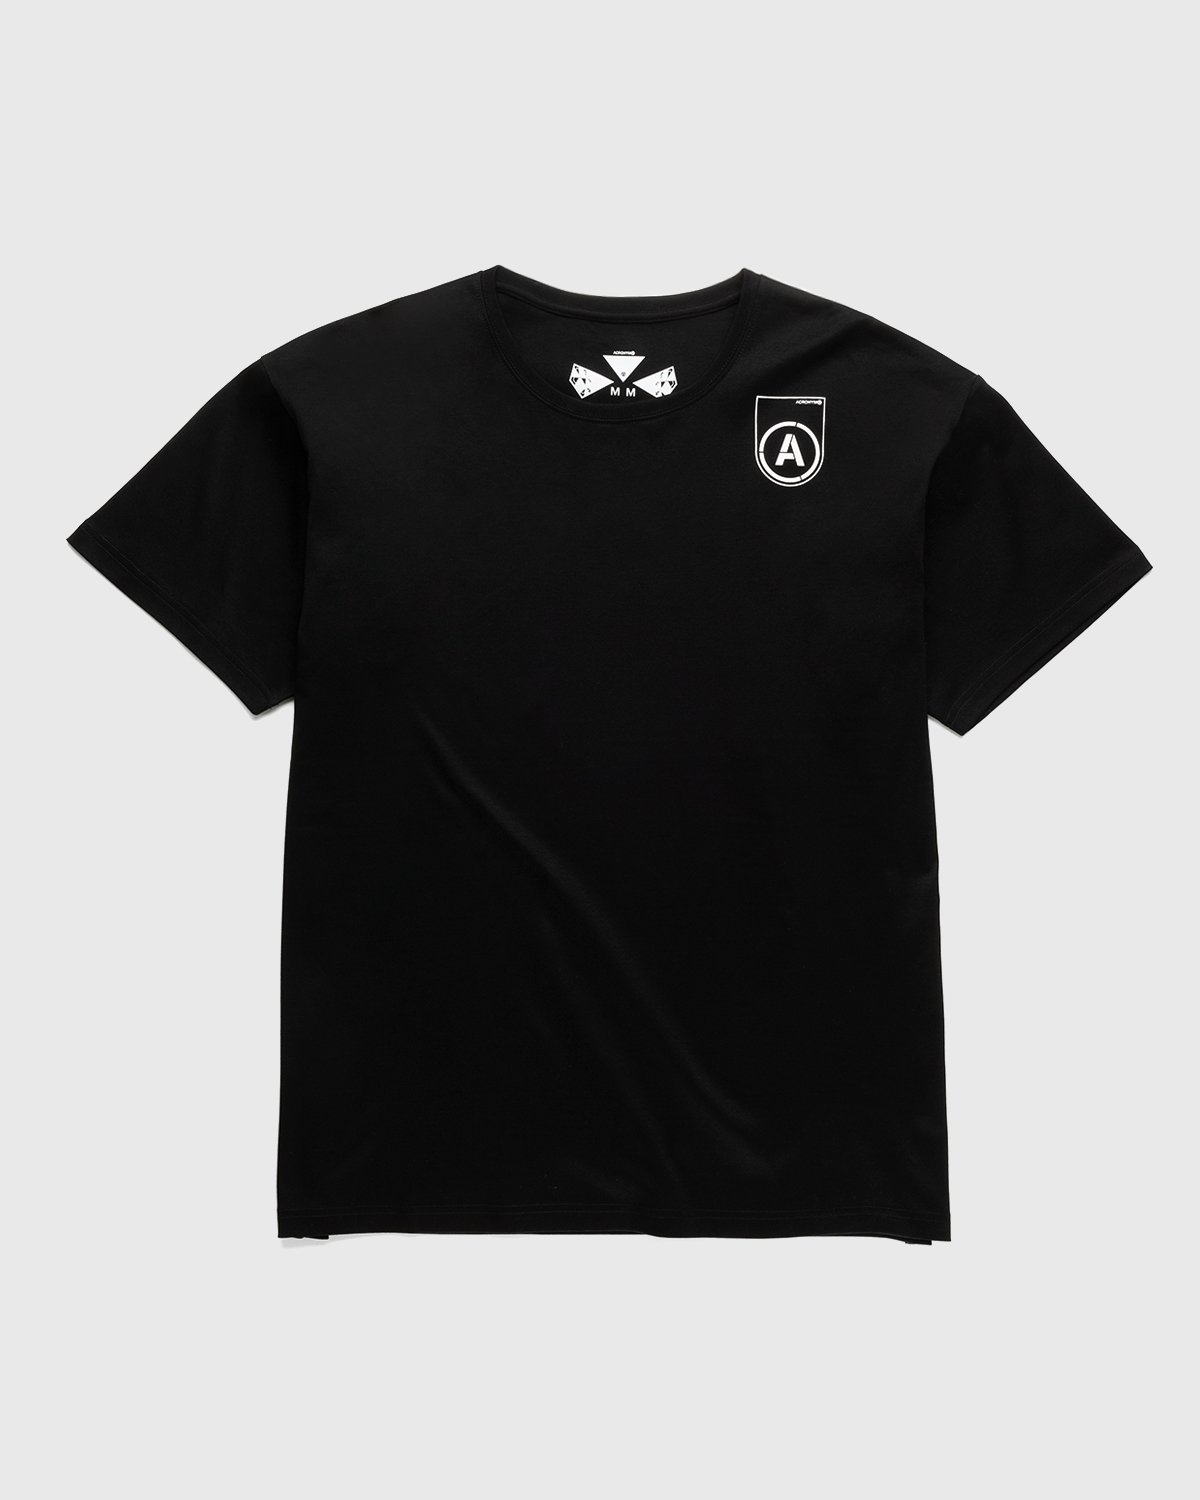 ACRONYM - S24-PR-B T-Shirt Black - Clothing - Black - Image 2